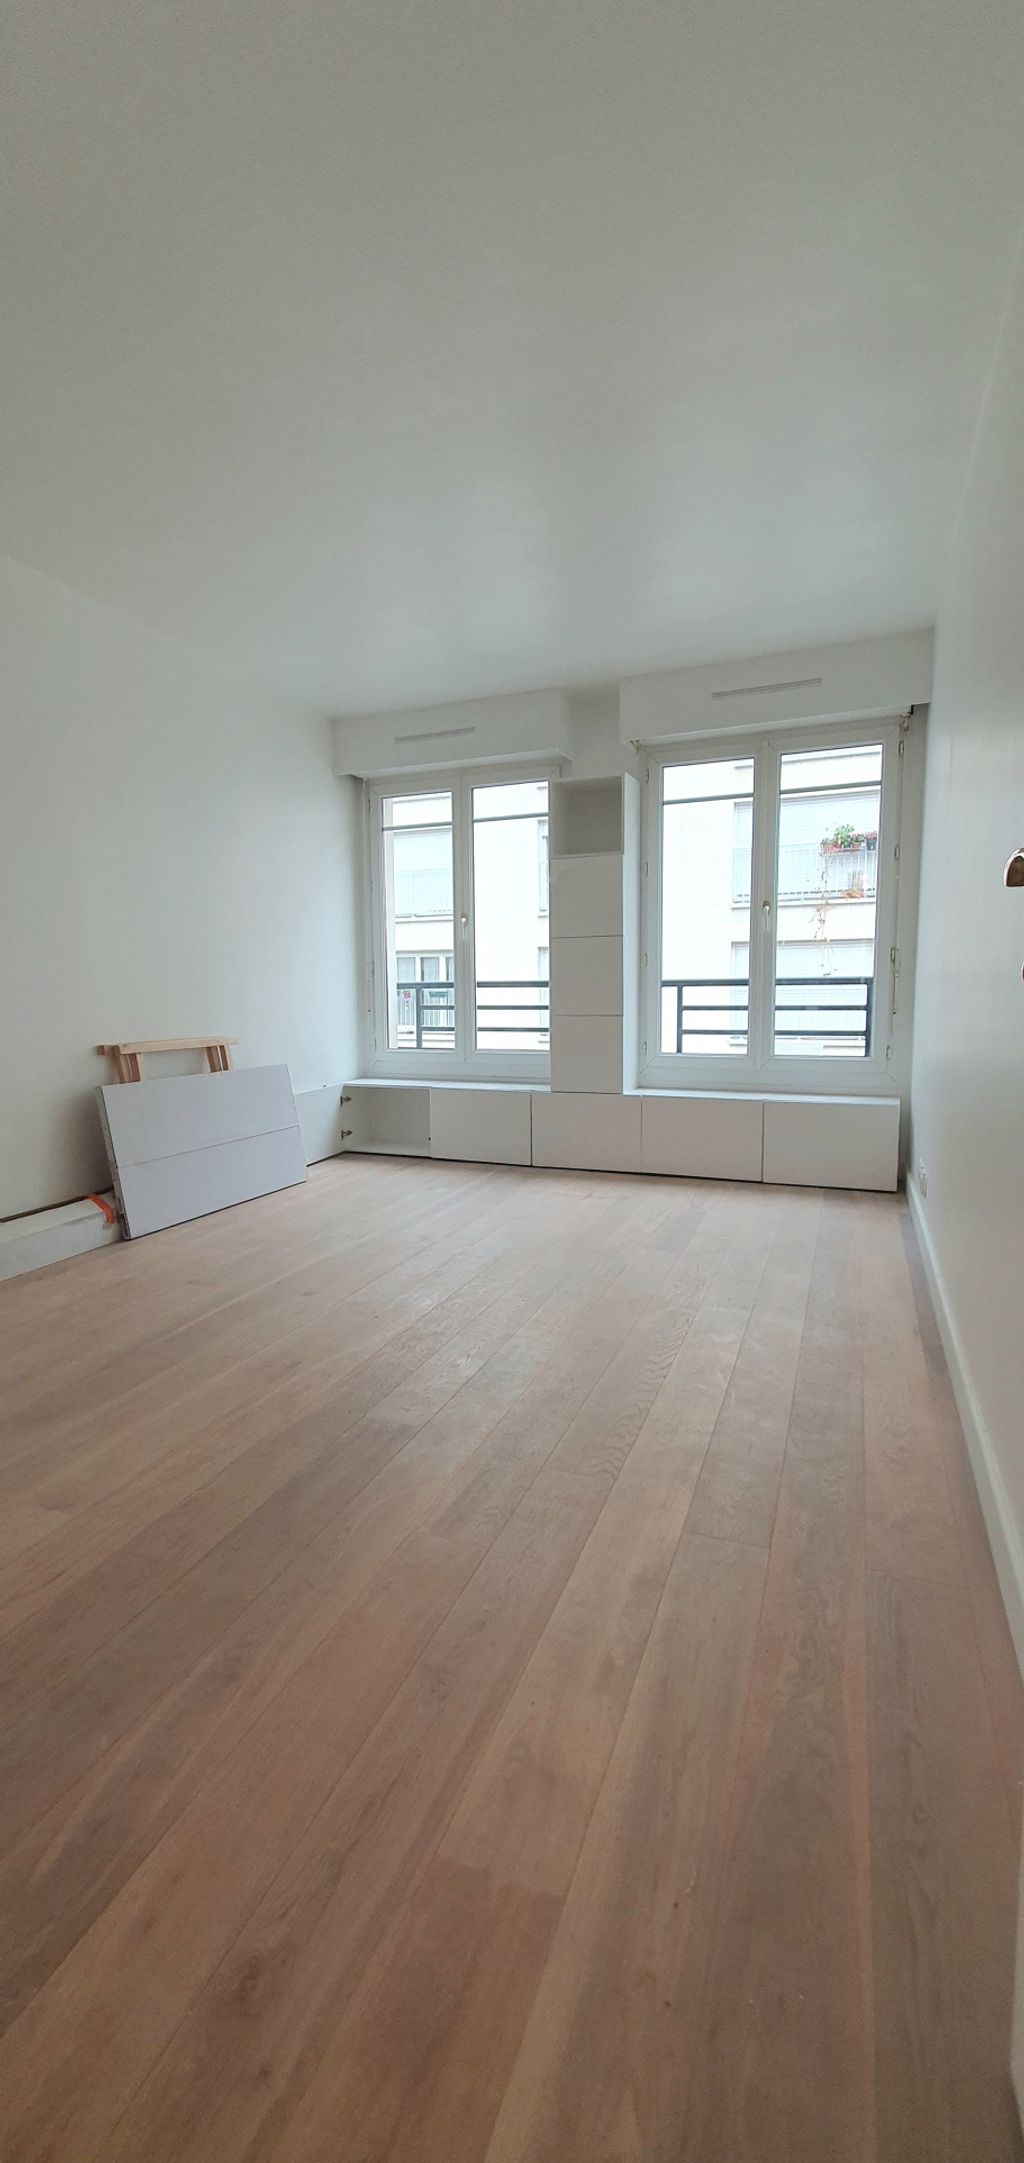 Achat studio à vendre 22 m² - Paris 12ème arrondissement